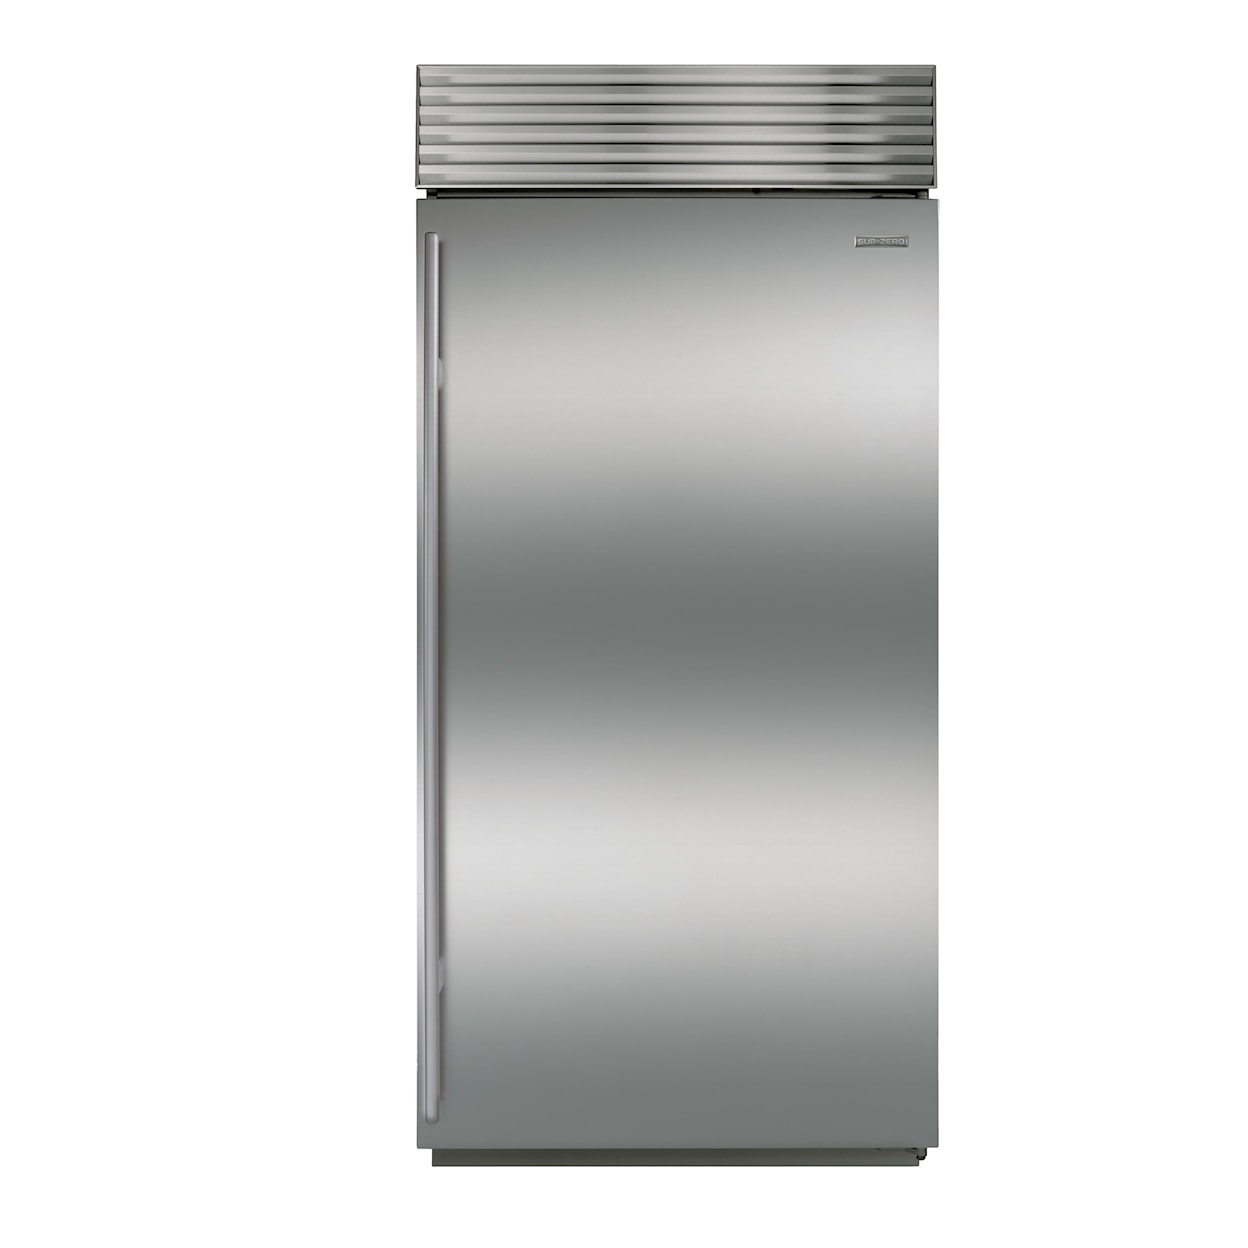 Sub-Zero Built-In Refrigeration 36" Built-In All Refrigerator